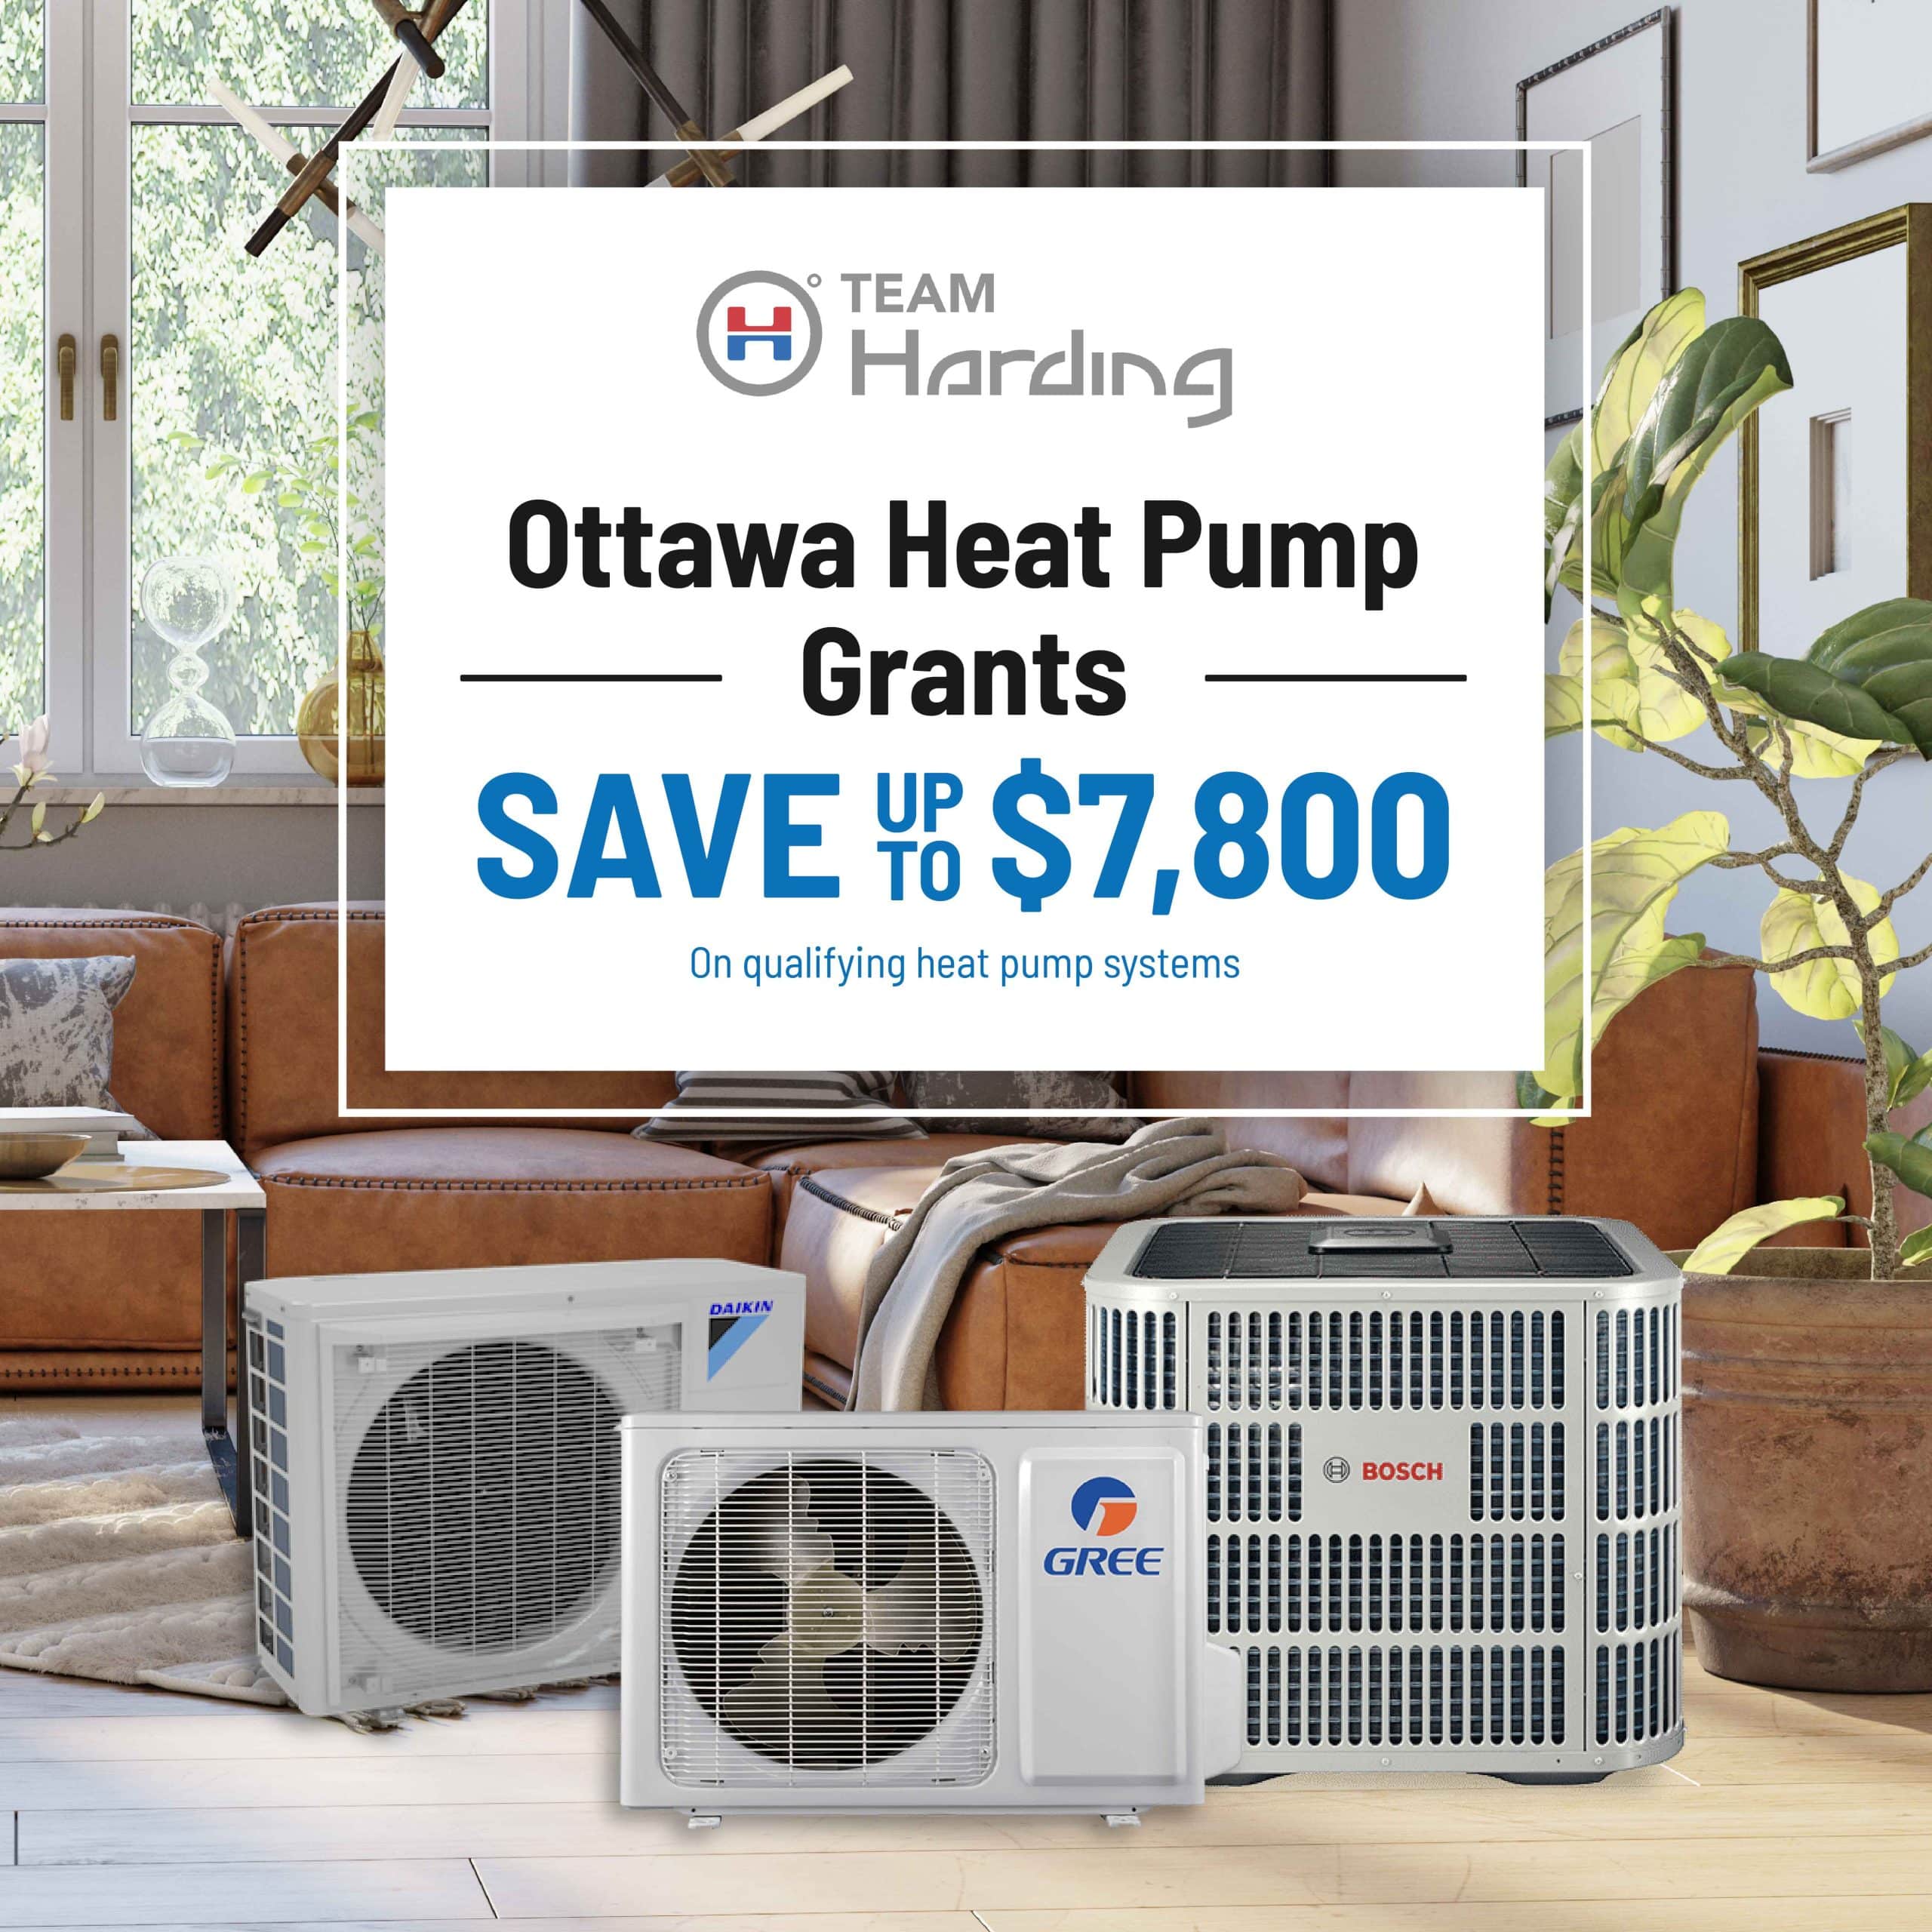 ottawa-heat-pump-grants-team-harding